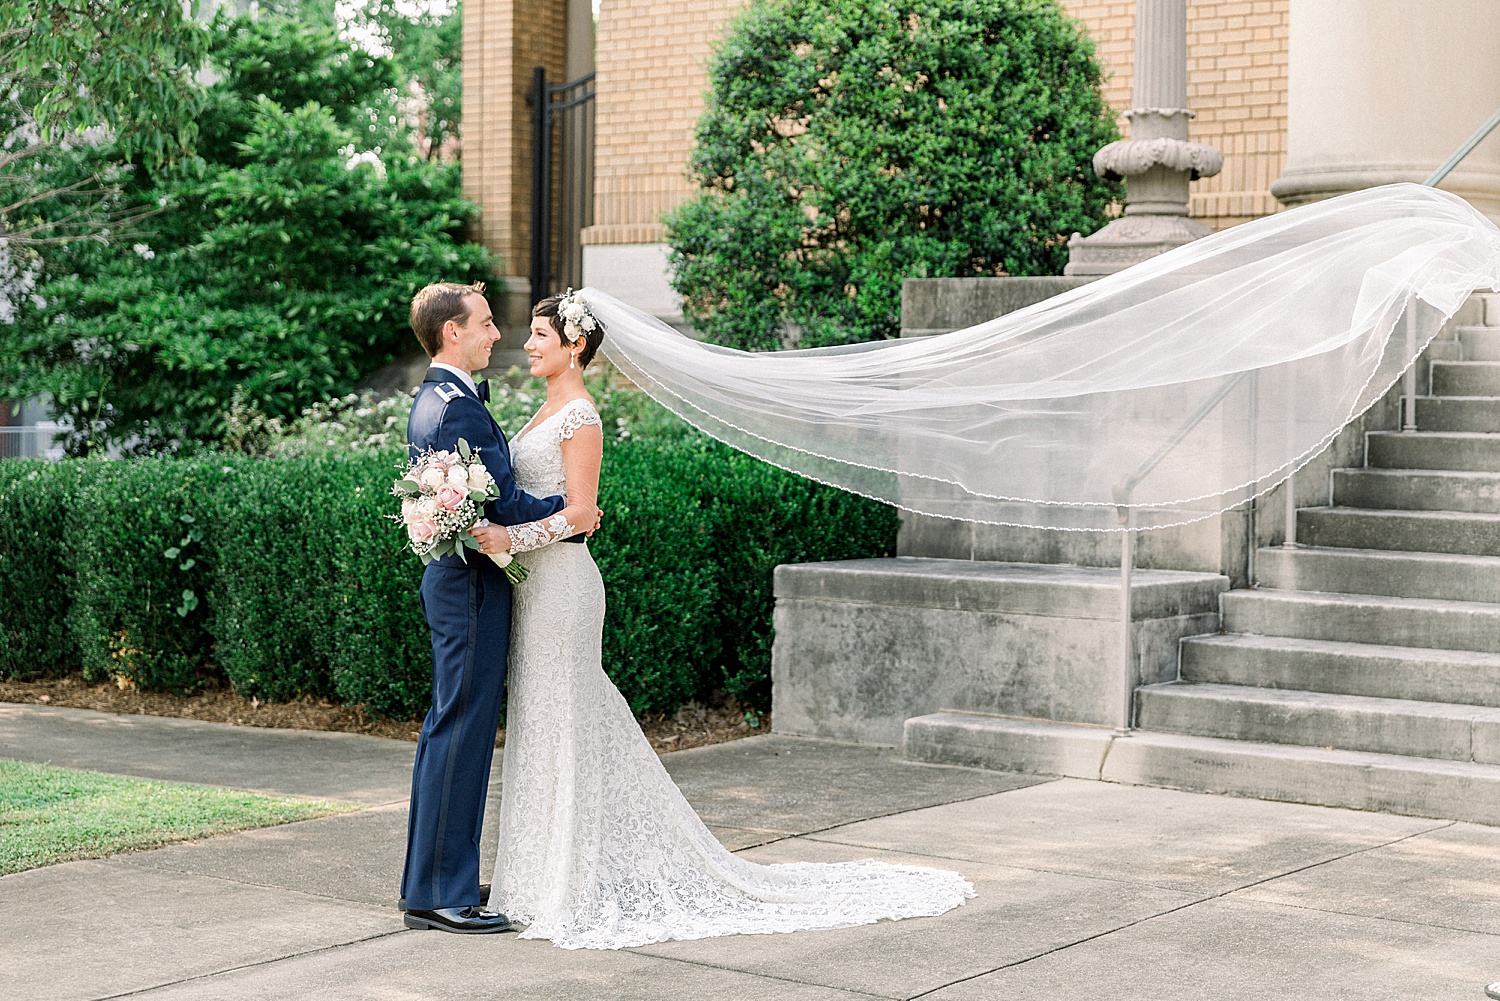 Bride + Groom stand outside in Birmingham Alabama as bride's veil flows behind her